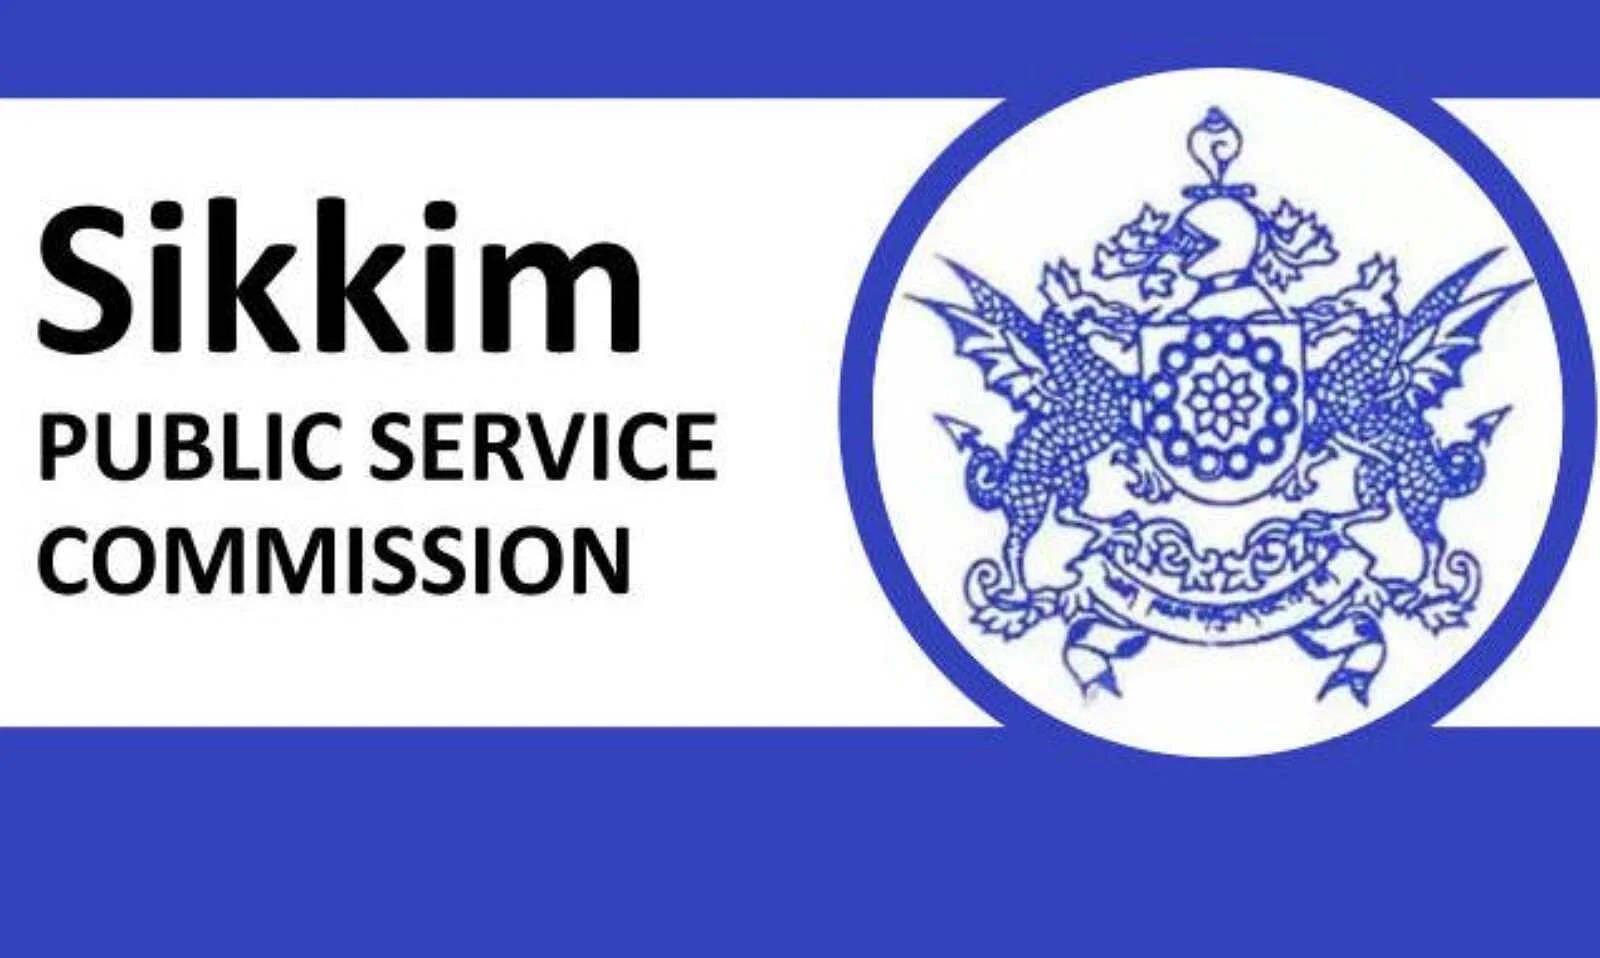 SIKKIM PSC Recruitment 2022: सिक्किम लोक सेवा आयोग (SIKKIM PSC) में नौकरी (Sarkari Naukri) पाने का एक शानदार अवसर निकला है। SIKKIM PSC ने डिप्टी अधिक्षक और लेखा अधिकारी के पदों (SIKKIM PSC Recruitment 2022) को भरने के लिए आवेदन मांगे हैं। इच्छुक एवं योग्य उम्मीदवार जो इन रिक्त पदों (SIKKIM PSC Recruitment 2022) के लिए आवेदन करना चाहते हैं, वे SIKKIM PSC की आधिकारिक वेबसाइट spsc.sikkim.gov.in पर जाकर अप्लाई कर सकते हैं। इन पदों (SIKKIM PSC Recruitment 2022) के लिए अप्लाई करने की अंतिम तिथि 15 नवंबर है।    इसके अलावा उम्मीदवार सीधे इस आधिकारिक लिंक spsc.sikkim.gov.in पर क्लिक करके भी इन पदों (SIKKIM PSC Recruitment 2022) के लिए अप्लाई कर सकते हैं।   अगर आपको इस भर्ती से जुड़ी और डिटेल जानकारी चाहिए, तो आप इस लिंक SIKKIM PSC Recruitment 2022 Notification PDF के जरिए आधिकारिक नोटिफिकेशन (SIKKIM PSC Recruitment 2022) को देख और डाउनलोड कर सकते हैं। इस भर्ती (SIKKIM PSC Recruitment 2022) प्रक्रिया के तहत कुल 62 पदों को भरा जाएगा।    SIKKIM PSC Recruitment 2022 के लिए महत्वपूर्ण तिथियां ऑनलाइन आवेदन शुरू होने की तारीख – ऑनलाइन आवेदन करने की आखरी तारीख- 15 नवंबर 2022 SIKKIM PSC Recruitment 2022 के लिए पदों का  विवरण पदों की कुल संख्या – डिप्टी अधिक्षक और लेखा अधिकारी- 62 पद SIKKIM PSC Recruitment 2022 के लिए योग्यता (Eligibility Criteria) डिप्टी अधिक्षक और लेखा अधिकारी: मान्यता प्राप्त संस्थान से स्नातक पास हो  और अनुभव हो।  SIKKIM PSC Recruitment 2022 के लिए उम्र सीमा (Age Limit) उम्मीदवारों की आयु विभाग 32 वर्ष मान्य होगी।  SIKKIM PSC Recruitment 2022 के लिए वेतन (Salary) डिप्टी अधिक्षक और लेखा अधिकारी: विभाग के नियमानुसार SIKKIM PSC Recruitment 2022 के लिए चयन प्रक्रिया (Selection Process) डिप्टी अधिक्षक और लेखा अधिकारी: लिखित परीक्षा के आधार पर किया जाएगा।  SIKKIM PSC Recruitment 2022 के लिए आवेदन कैसे करें इच्छुक और योग्य उम्मीदवार SIKKIM PSC की आधिकारिक वेबसाइट (spsc.sikkim.gov.in) के माध्यम से 15 नवंबर 2022 तक आवेदन कर सकते हैं। इस सबंध में विस्तृत जानकारी के लिए आप ऊपर दिए गए आधिकारिक अधिसूचना को देखें।  यदि आप सरकारी नौकरी पाना चाहते है, तो अंतिम तिथि निकलने से पहले इस भर्ती के लिए अप्लाई करें और अपना सरकारी नौकरी पाने का सपना पूरा करें। इस तरह की और लेटेस्ट सरकारी नौकरियों की जानकारी के लिए आप naukrinama.com पर जा सकते है।     SIKKIM PSC Recruitment 2022: A great opportunity has come out to get a job (Sarkari Naukri) in Sikkim Public Service Commission (SIKKIM PSC). SIKKIM PSC has invited applications to fill the posts of Deputy Superintendent and Accounts Officer (SIKKIM PSC Recruitment 2022). Interested and eligible candidates who want to apply for these vacant posts (SIKKIM PSC Recruitment 2022) can apply by visiting the official website of SIKKIM PSC at spsc.sikkim.gov.in. The last date to apply for these posts (SIKKIM PSC Recruitment 2022) is 15 November.  Apart from this, candidates can also directly apply for these posts (SIKKIM PSC Recruitment 2022) by clicking on this official link spsc.sikkim.gov.in. If you want more detail information related to this recruitment, then you can see and download the official notification (SIKKIM PSC Recruitment 2022) through this link SIKKIM PSC Recruitment 2022 Notification PDF. A total of 62 posts will be filled under this recruitment (SIKKIM PSC Recruitment 2022) process.  Important Dates for SIKKIM PSC Recruitment 2022 Online application start date – Last date to apply online - 15 November 2022 SIKKIM PSC Recruitment 2022 Vacancy Details Total No. of Posts – Deputy Superintendent & Accounts Officer – 62 Posts Eligibility Criteria for SIKKIM PSC Recruitment 2022 Deputy Superintendent and Accounts Officer: Graduate from recognized institute and experience. Age Limit for SIKKIM PSC Recruitment 2022 The age department of the candidates will be valid 32 years. Salary for SIKKIM PSC Recruitment 2022 Deputy Superintendent and Accounts Officer: As per the rules of the department Selection Process for SIKKIM PSC Recruitment 2022 Deputy Superintendent and Accounts Officer: Will be done on the basis of written test. How to Apply for SIKKIM PSC Recruitment 2022 Interested and eligible candidates may apply through official website of SIKKIM PSC (spsc.sikkim.gov.in) latest by 15 November 2022. For detailed information regarding this, you can refer to the official notification given above.  If you want to get a government job, then apply for this recruitment before the last date and fulfill your dream of getting a government job. You can visit naukrinama.com for more such latest government jobs information.